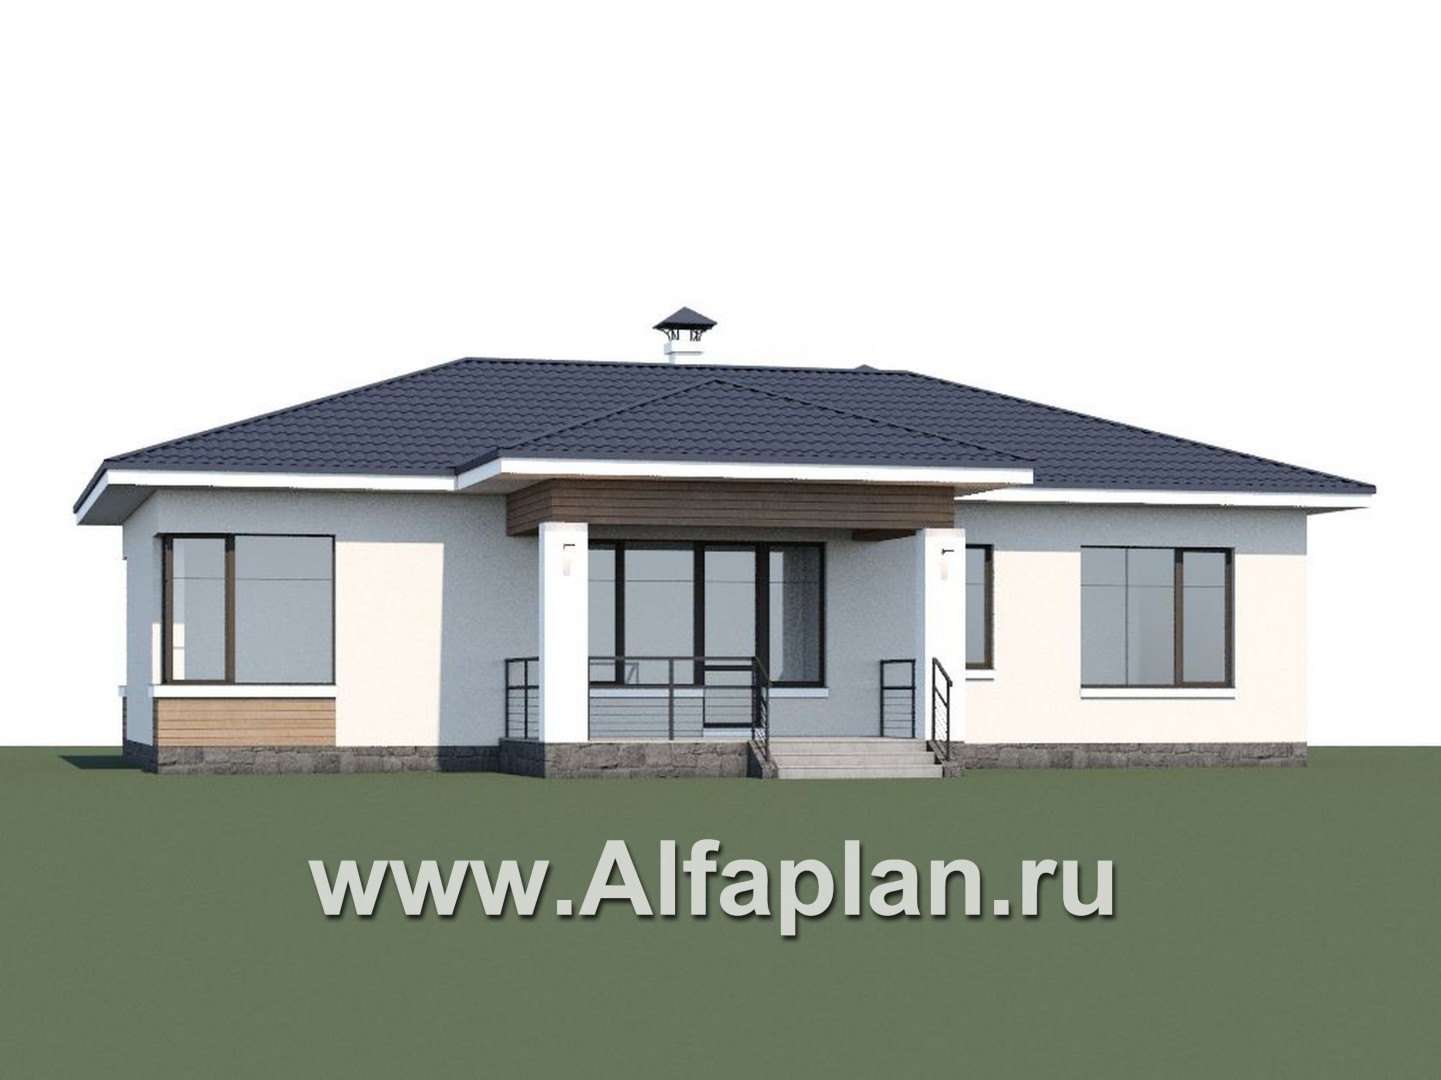 Проекты домов Альфаплан - «Безоблачный» - экономичный одноэтажный дом (дача) - дополнительное изображение №1